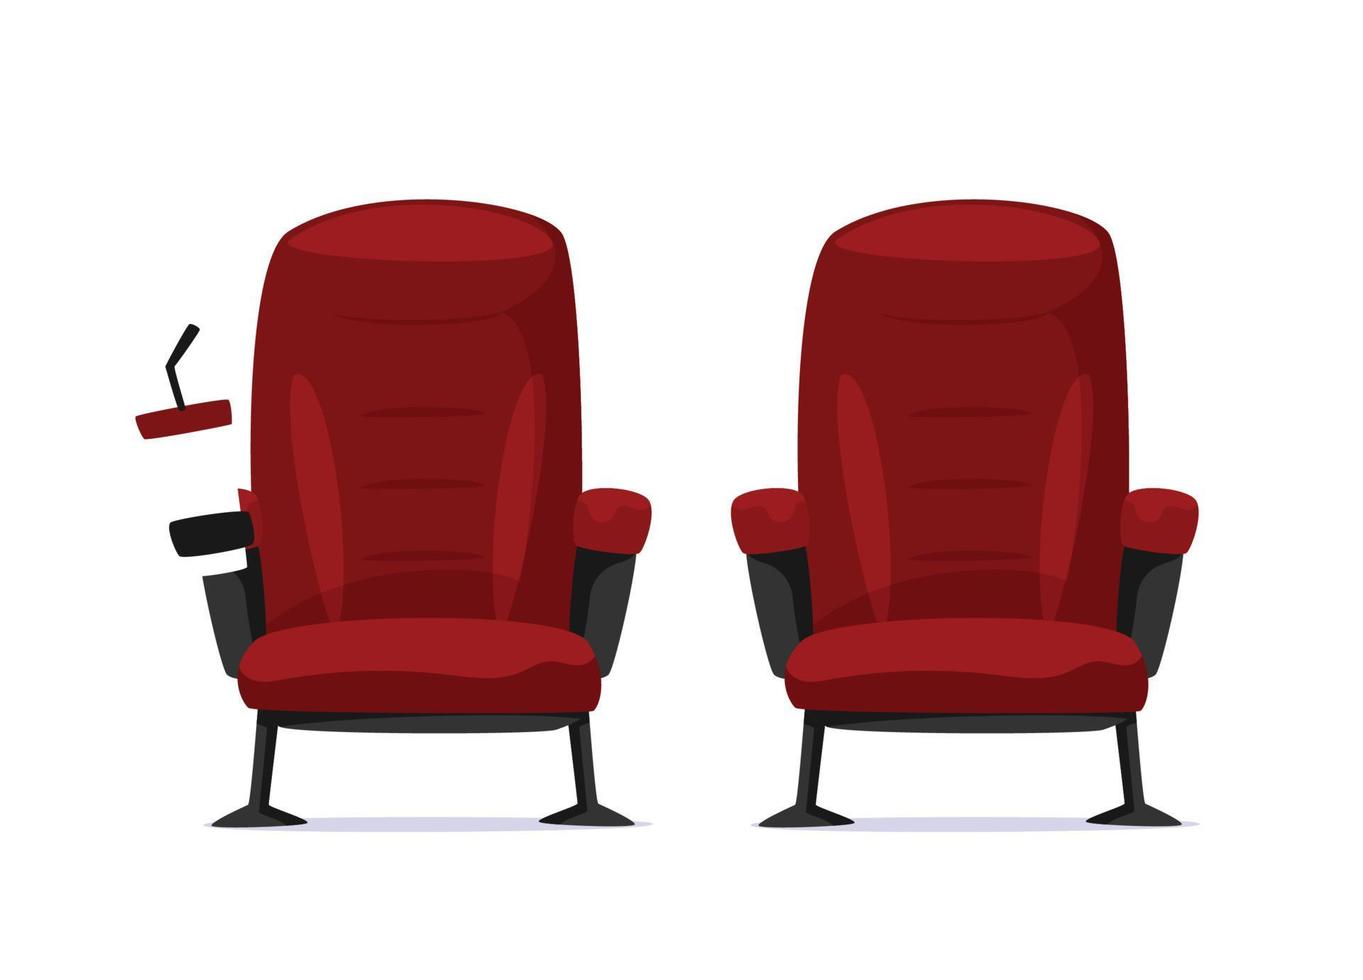 conceito de cinema - vista frontal da cadeira de cinema vermelha vetor